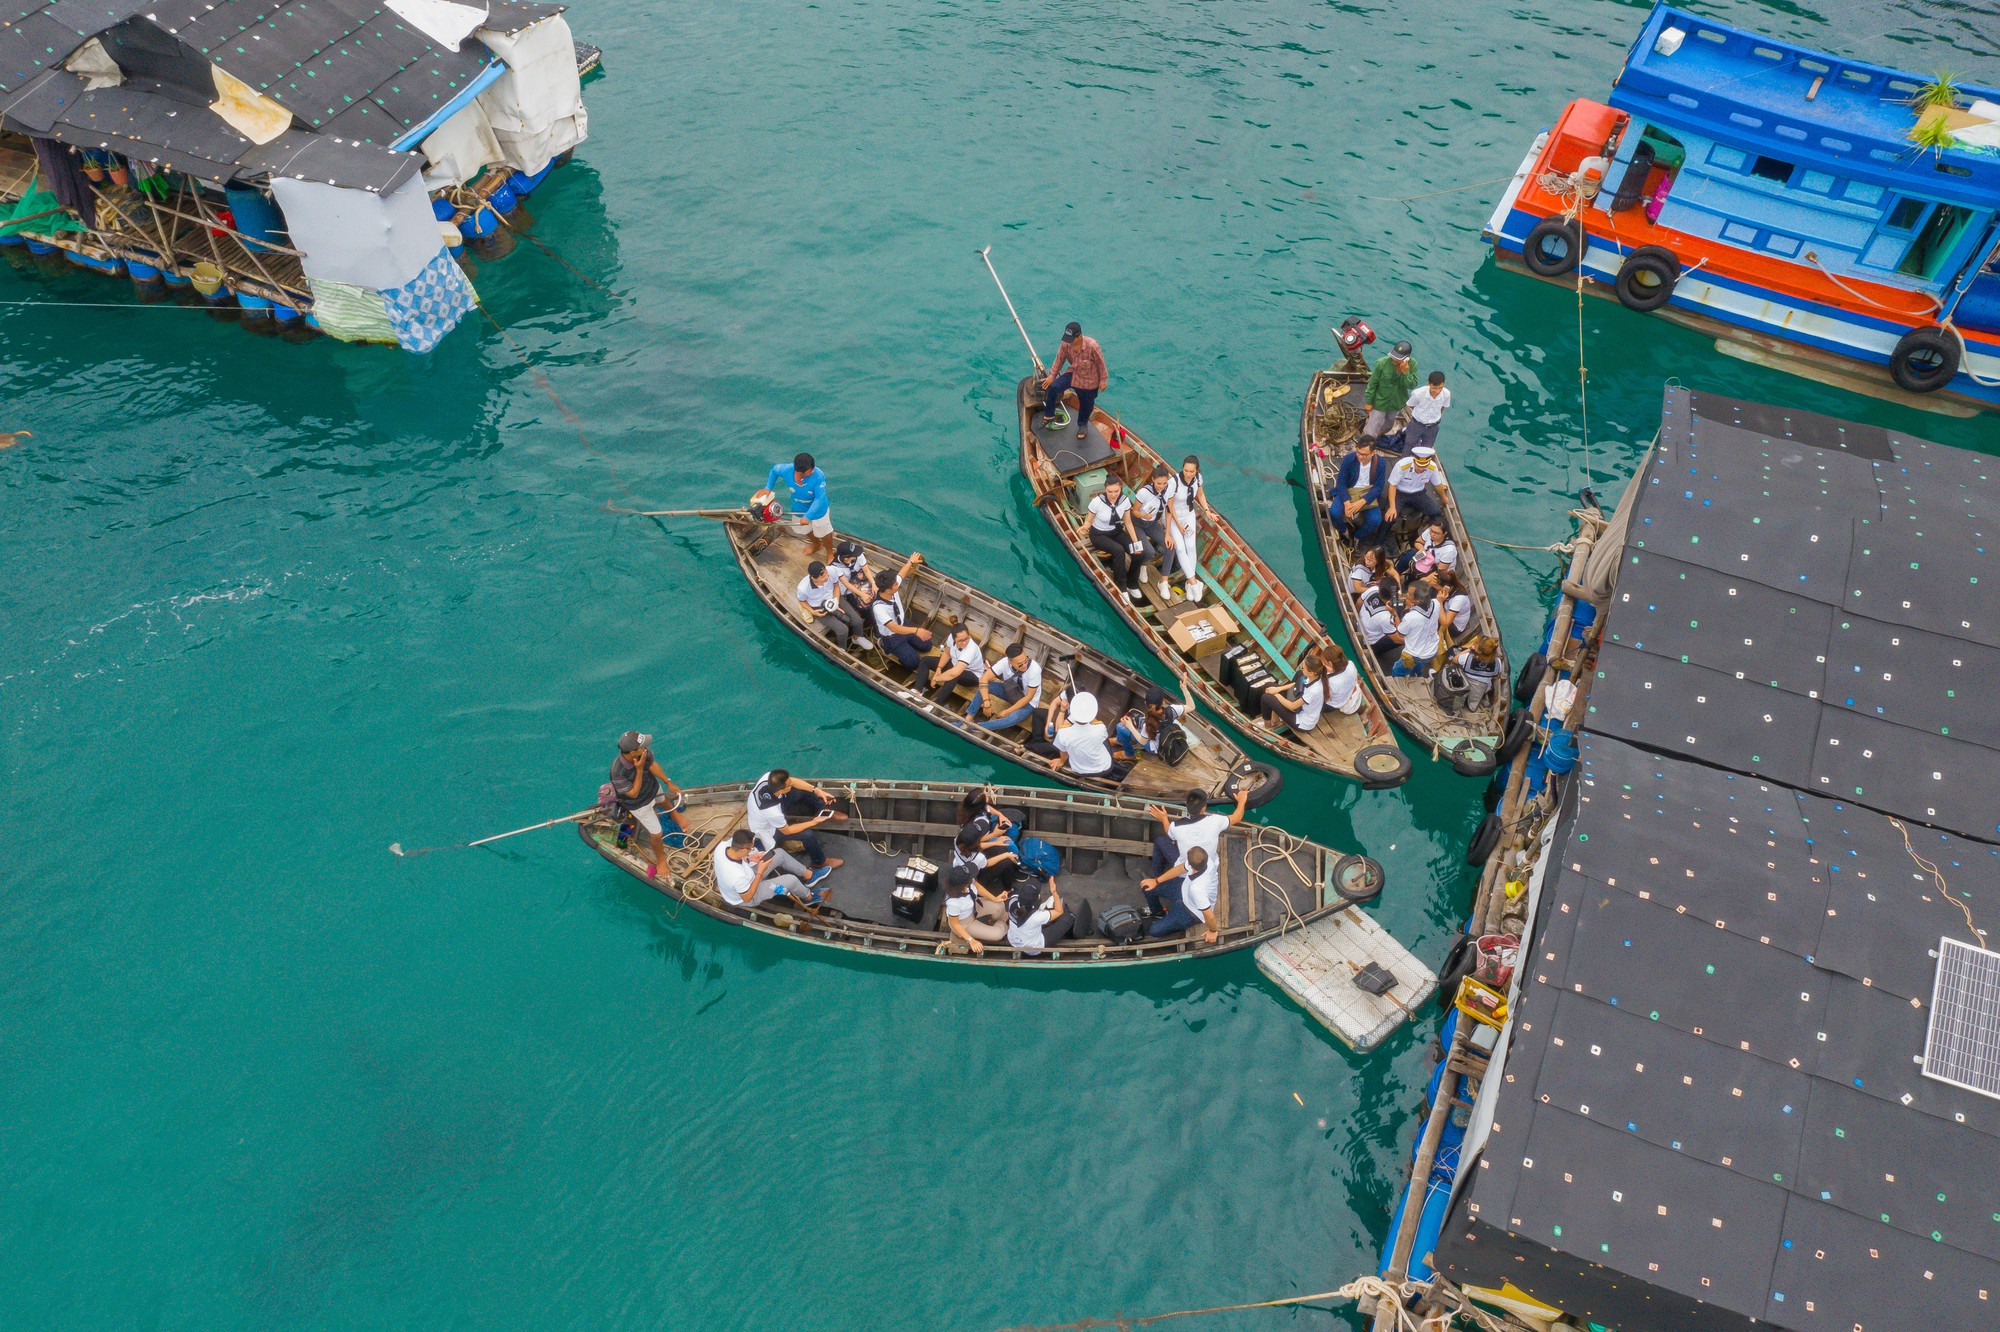 Du lịch đảo Thổ Chu thú vị với kinh nghiệm “phượt biển” có 1-0-2